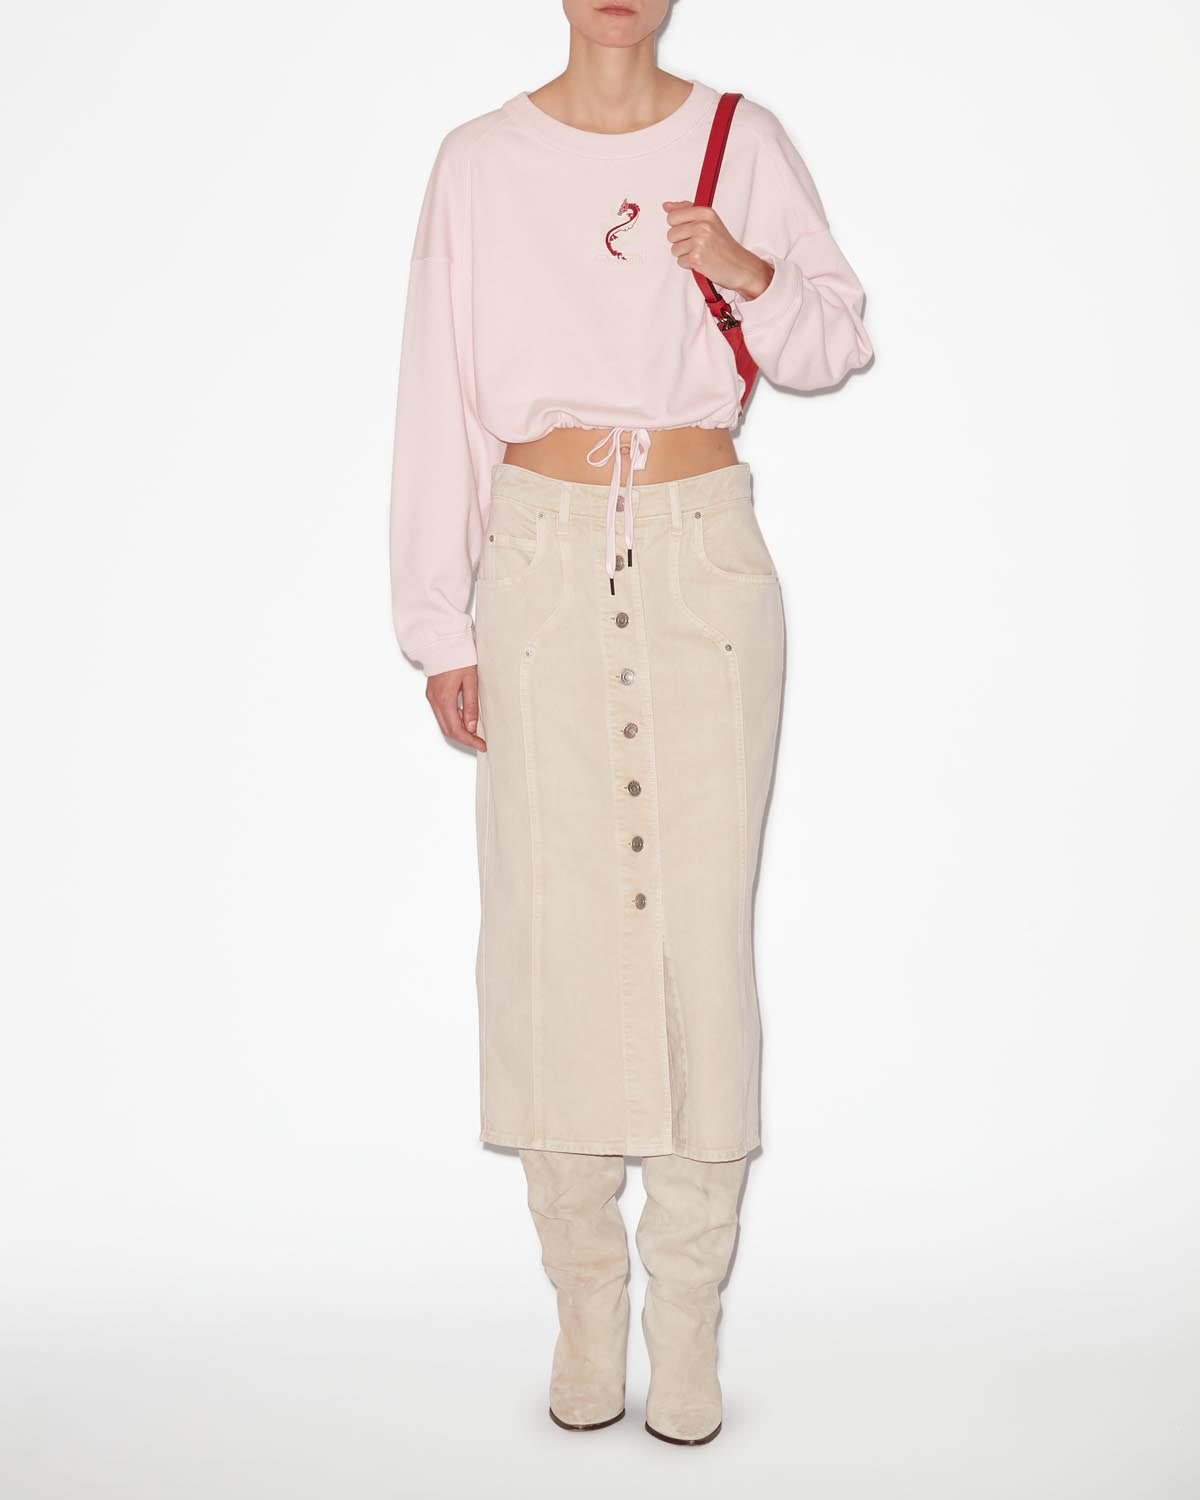 Margyo スウェットシャツ Woman ピンク 2